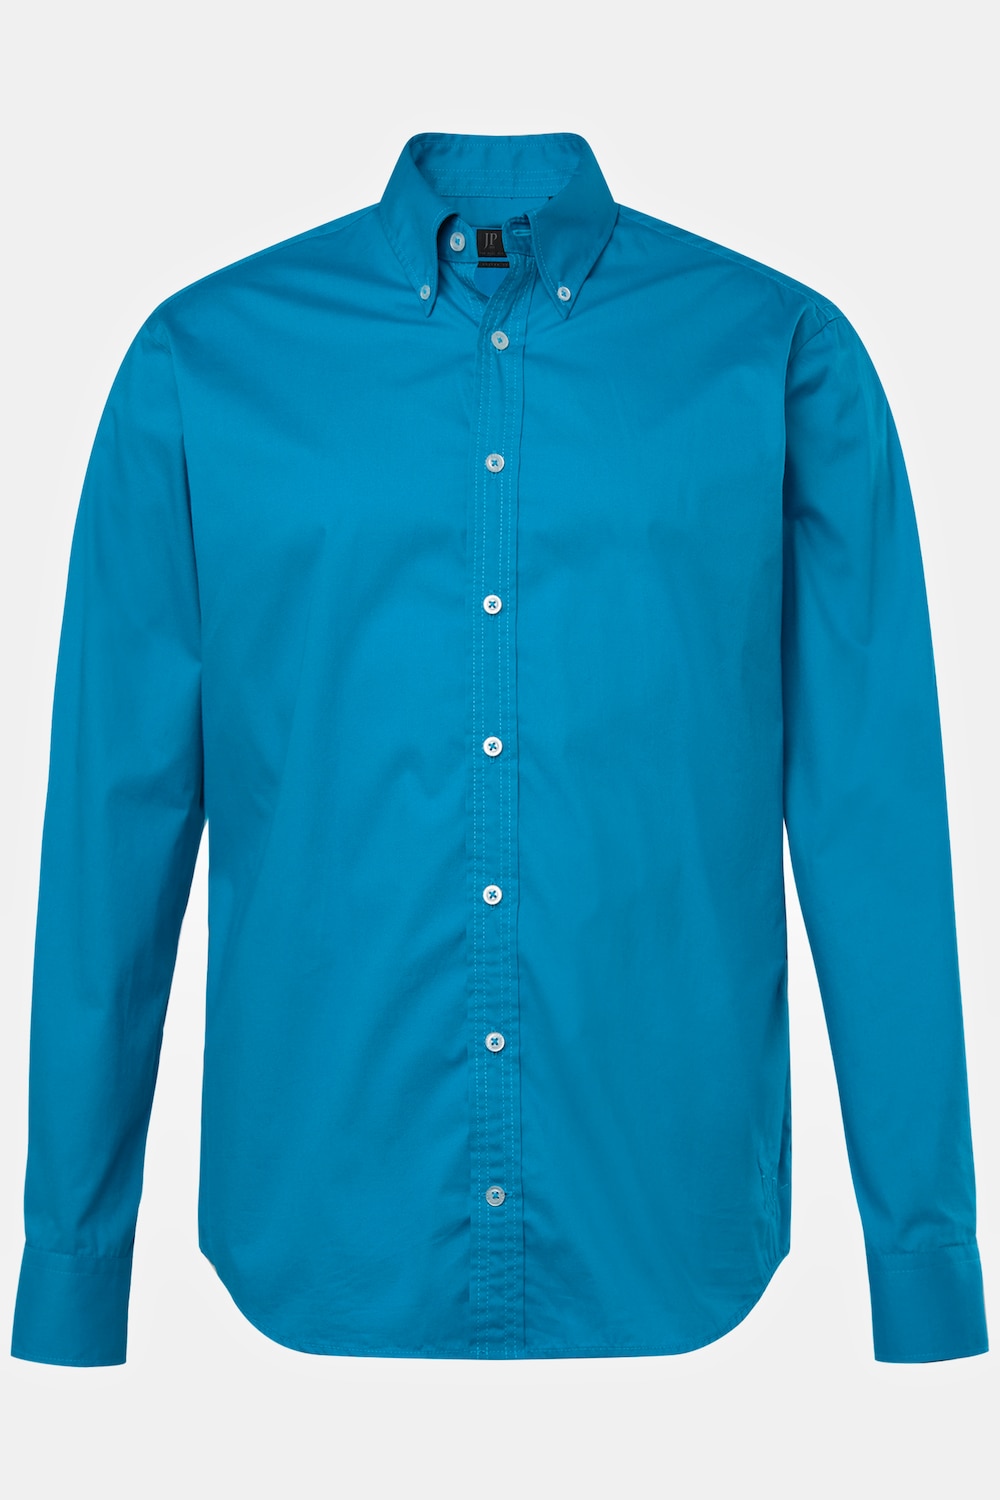 Grote Maten Overhemd, Heren, turquoise, Maat: XL, Katoen, JP1880